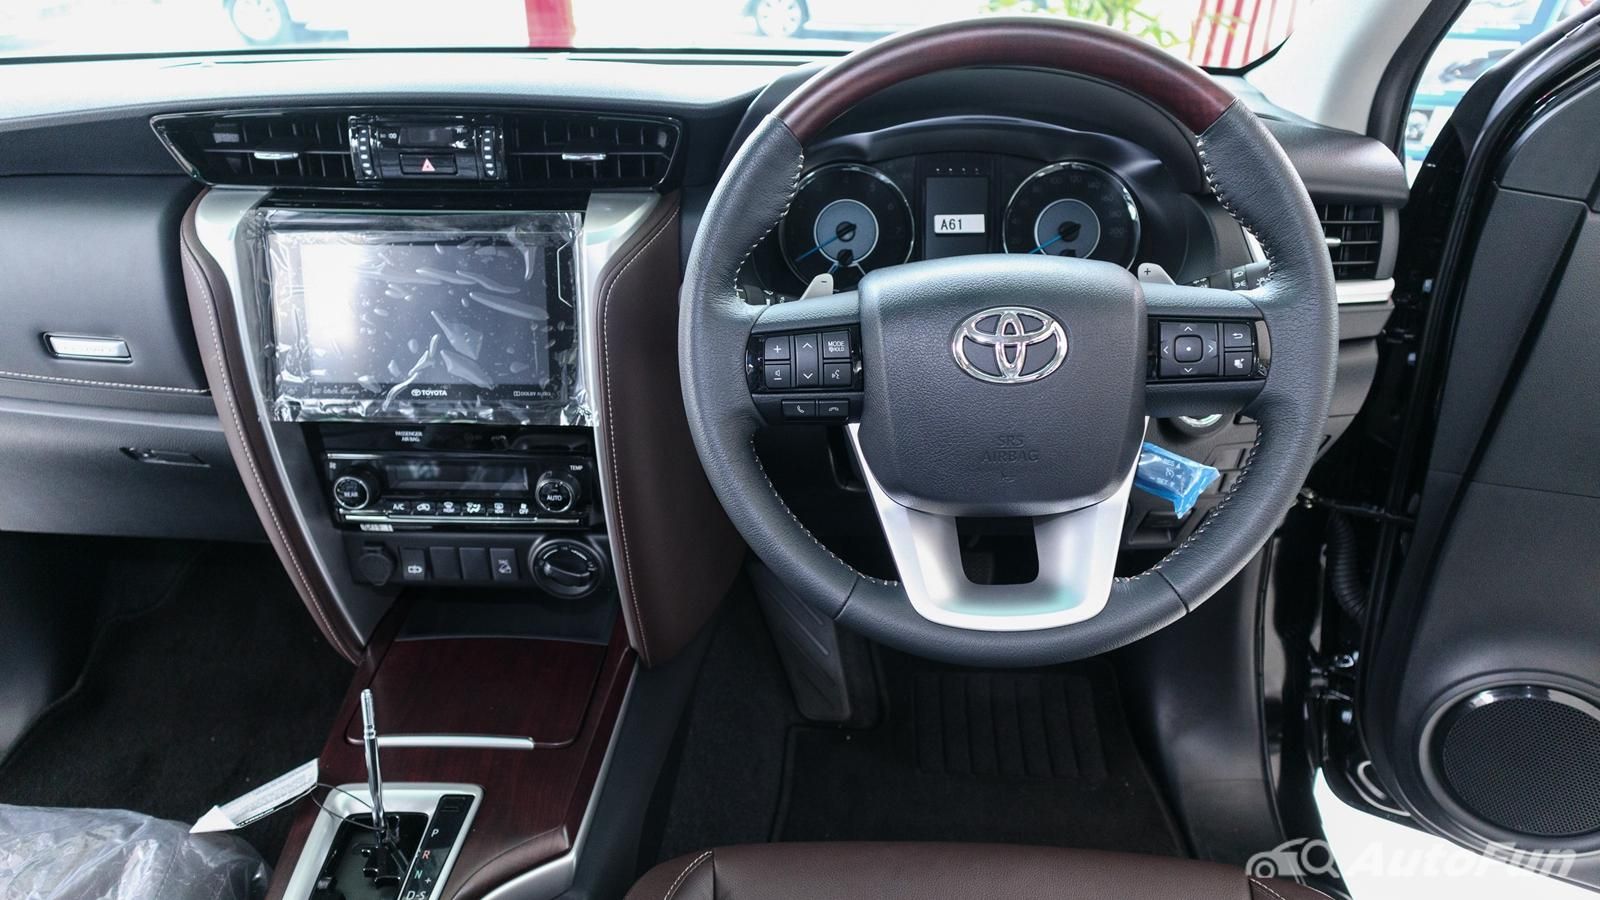 Toyota Fortuner 2019 Interior 003